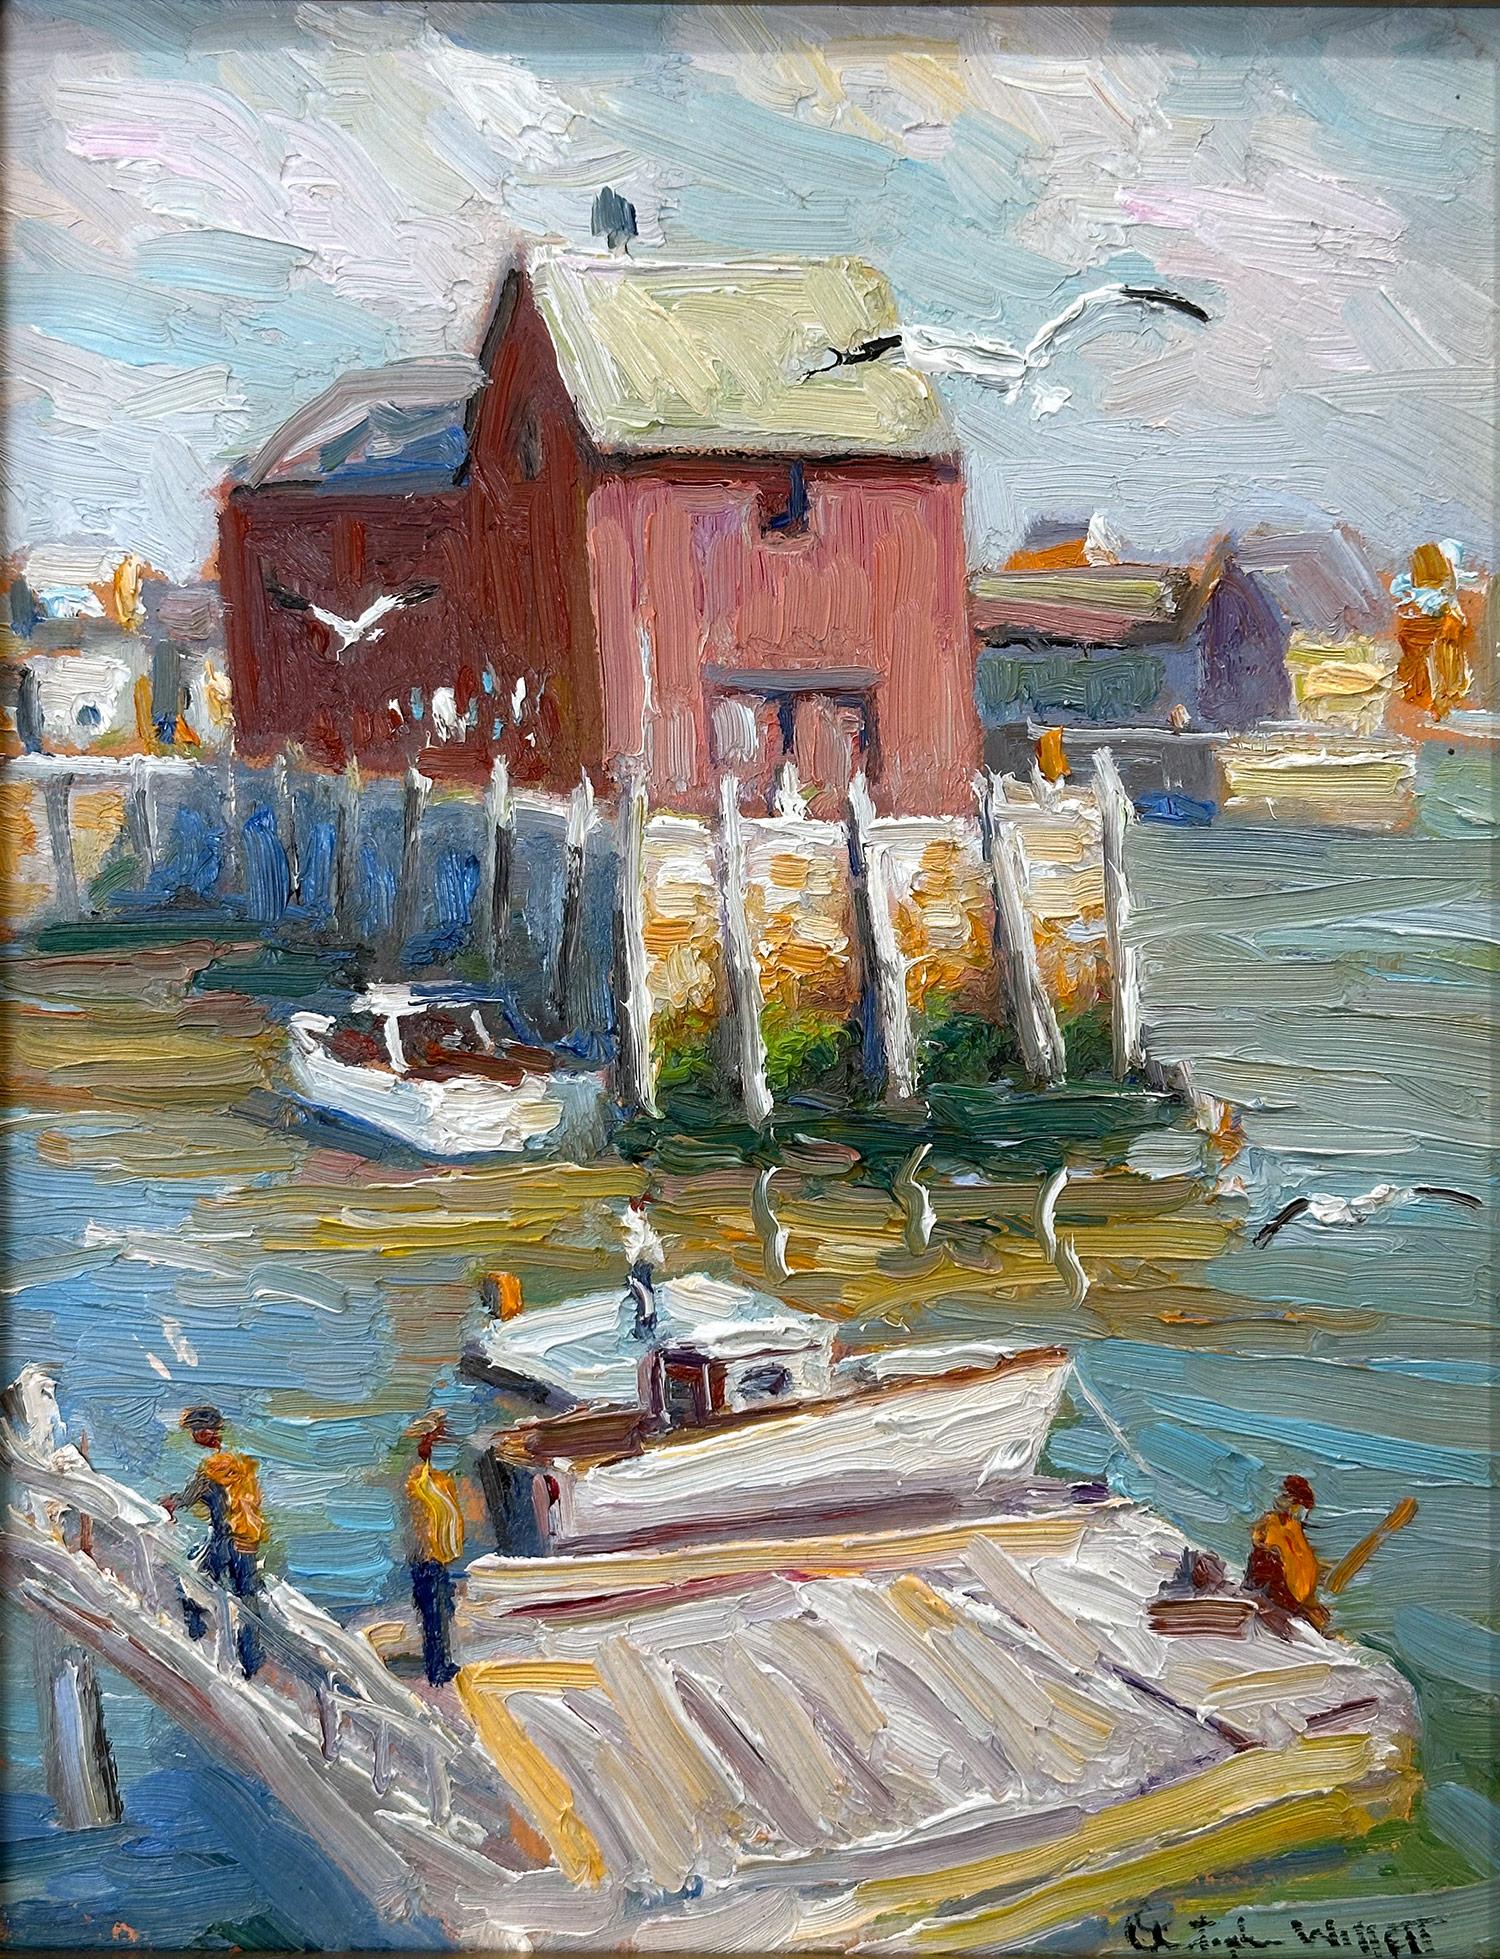 Impressionistische pastorale Szene mit malerischem Blick auf die Docks und die Fischer der legendären Fischerhütte am Bearskin Neck am Bradley Wharf in der Hafenstadt Rockport, Massachusetts. Willet hat dieses Stück auf sehr intime und doch